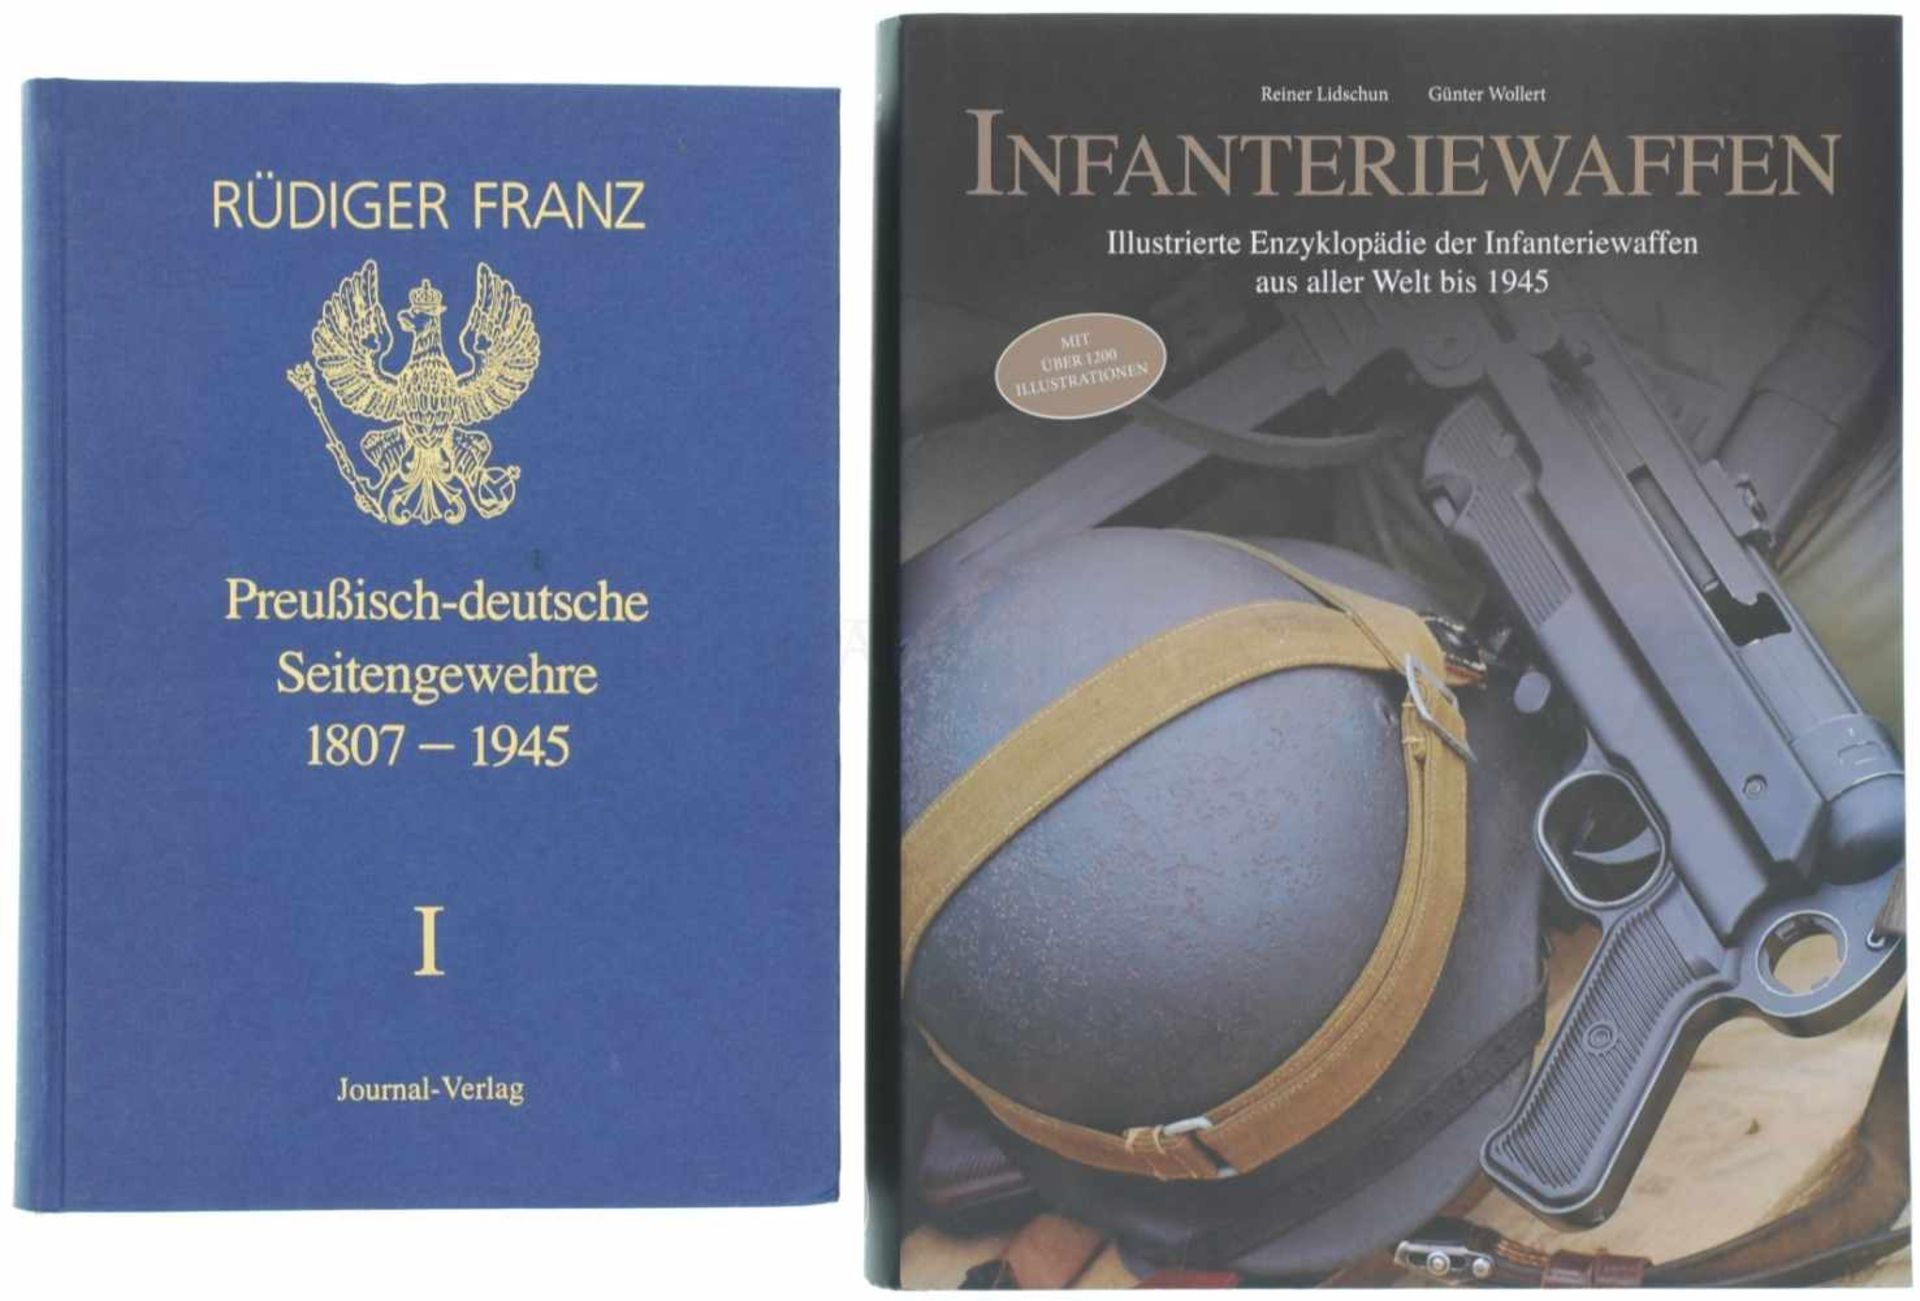 Konvolut von 2 Büchern 1. Preussisch-reichsdeutsche Bajonette und aufpflanzbare Seitengewehre,